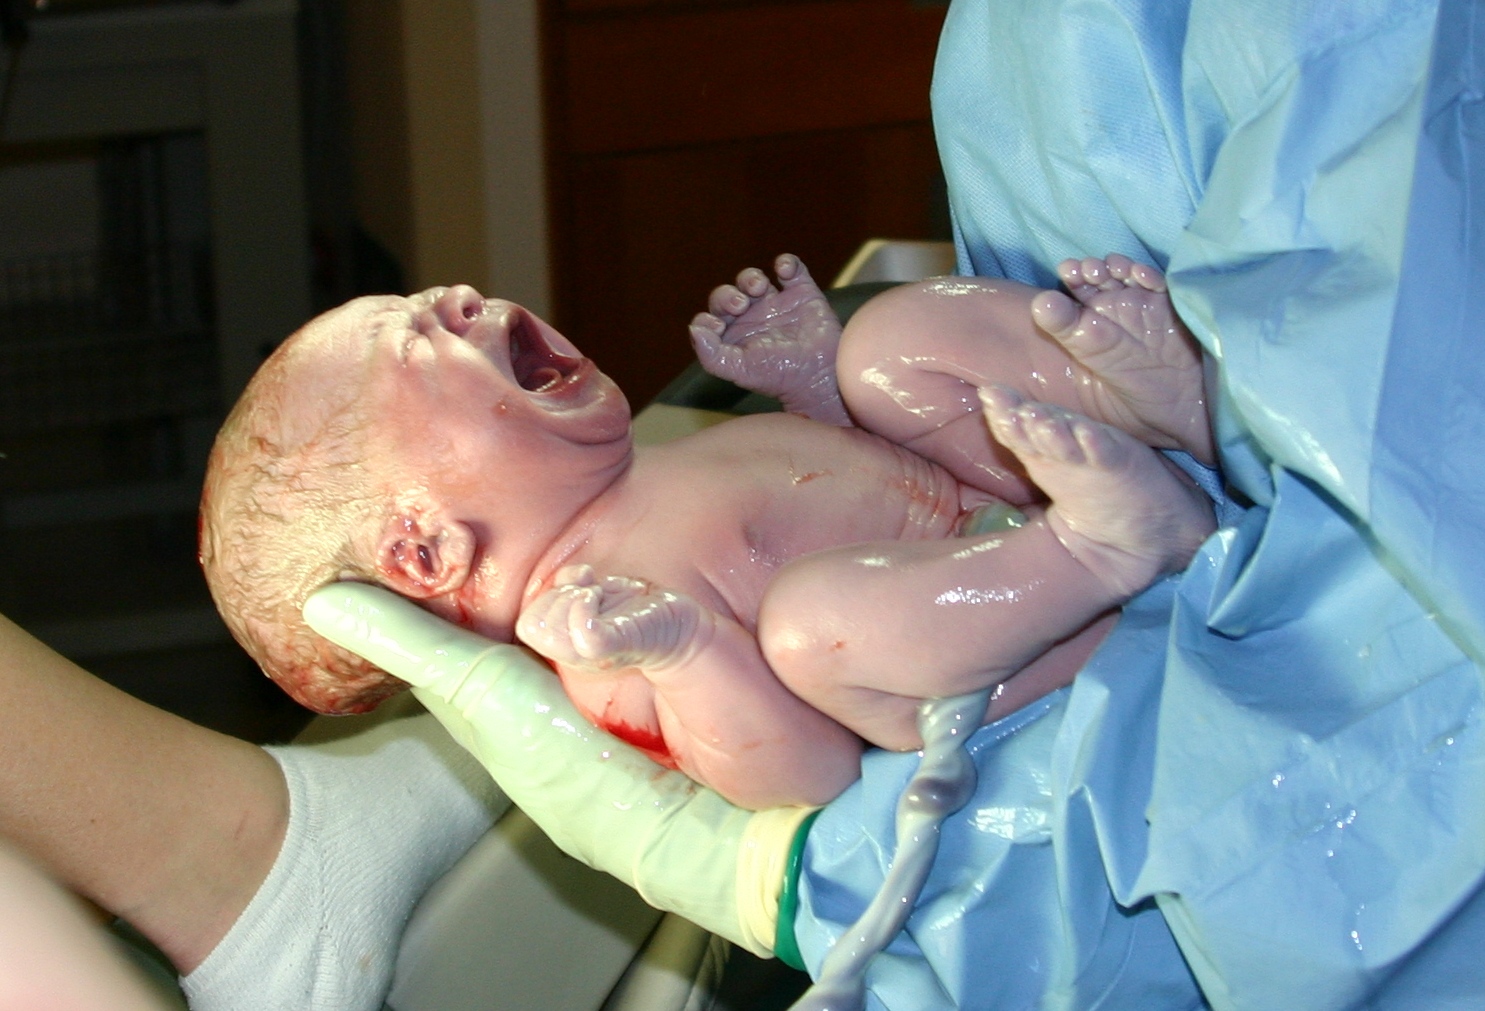 Violenza ostetrica, indagine shock : 1 mamma su 5 maltrattata durante il parto